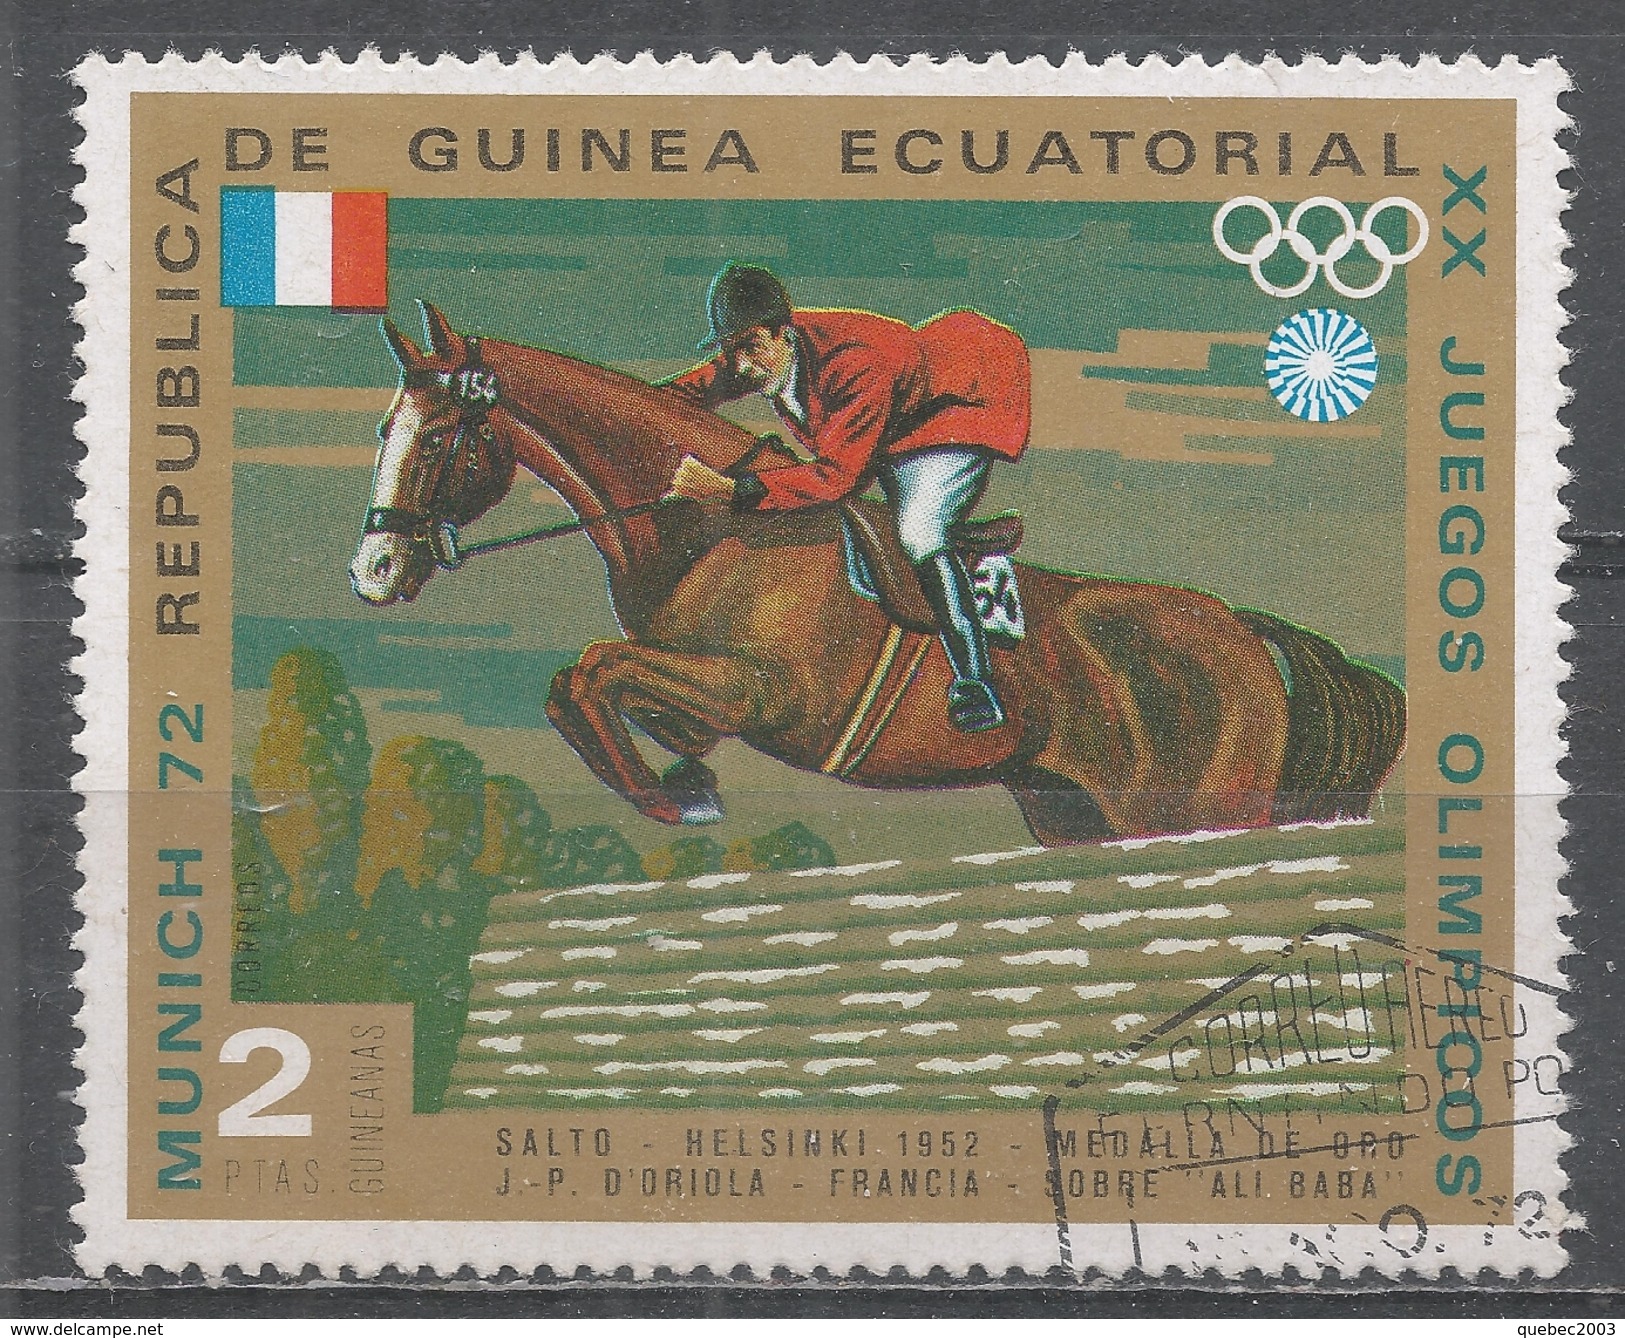 Equatorial Guinea 1972. Scott #72147 (U) J-P D'oriola And ''Ali Baba'' (FRA), Helsink1 1952, Gold Medal - Guinée Equatoriale